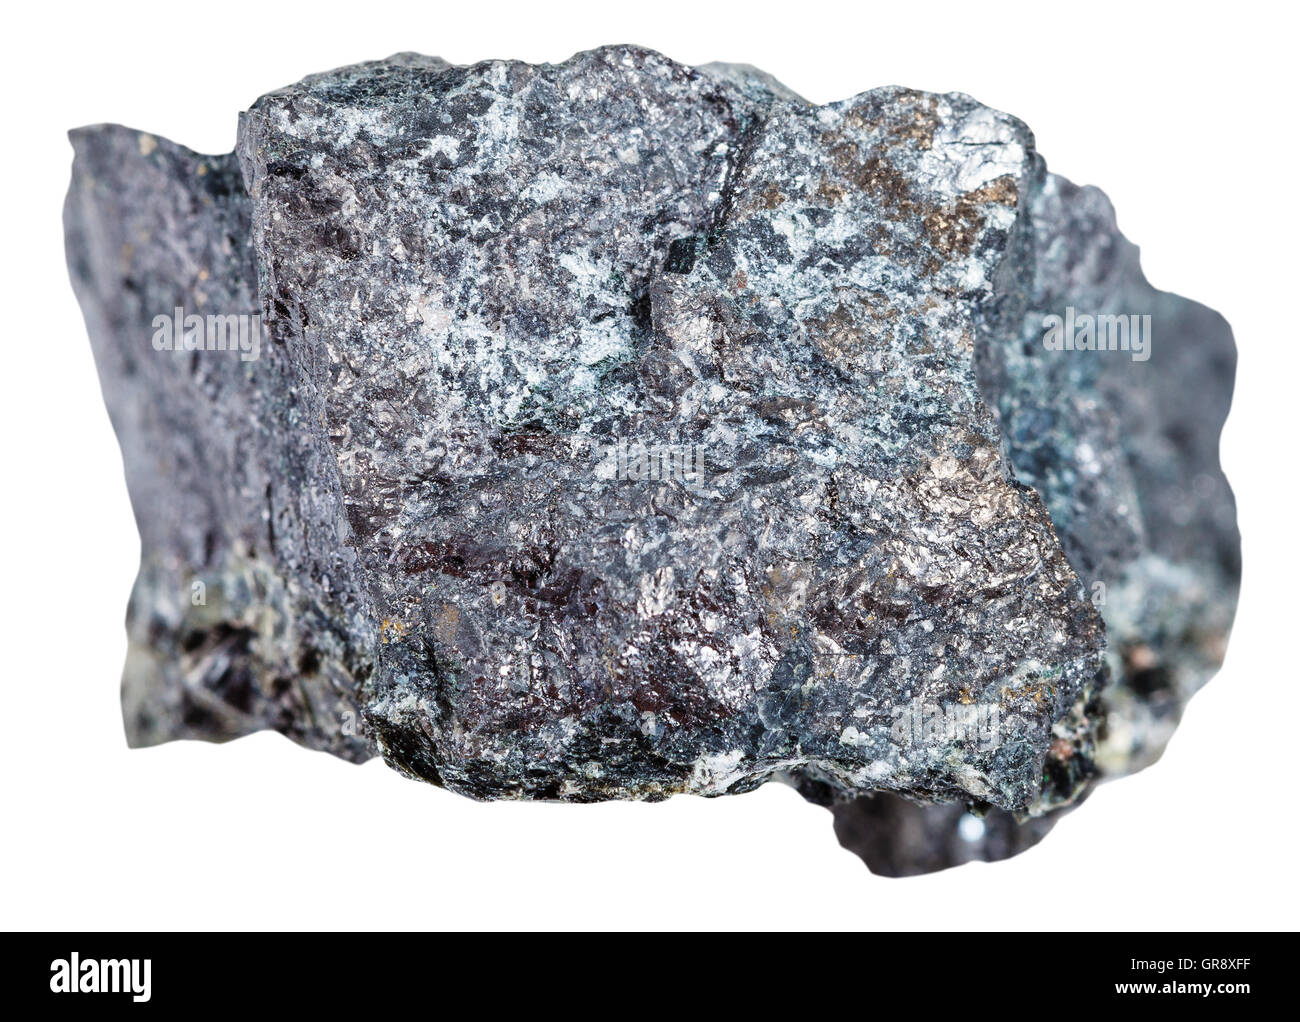 Makroaufnahmen von Bodenschätzen - Exemplar von Magnetit Eisenerz isoliert auf weißem Hintergrund Stockfoto